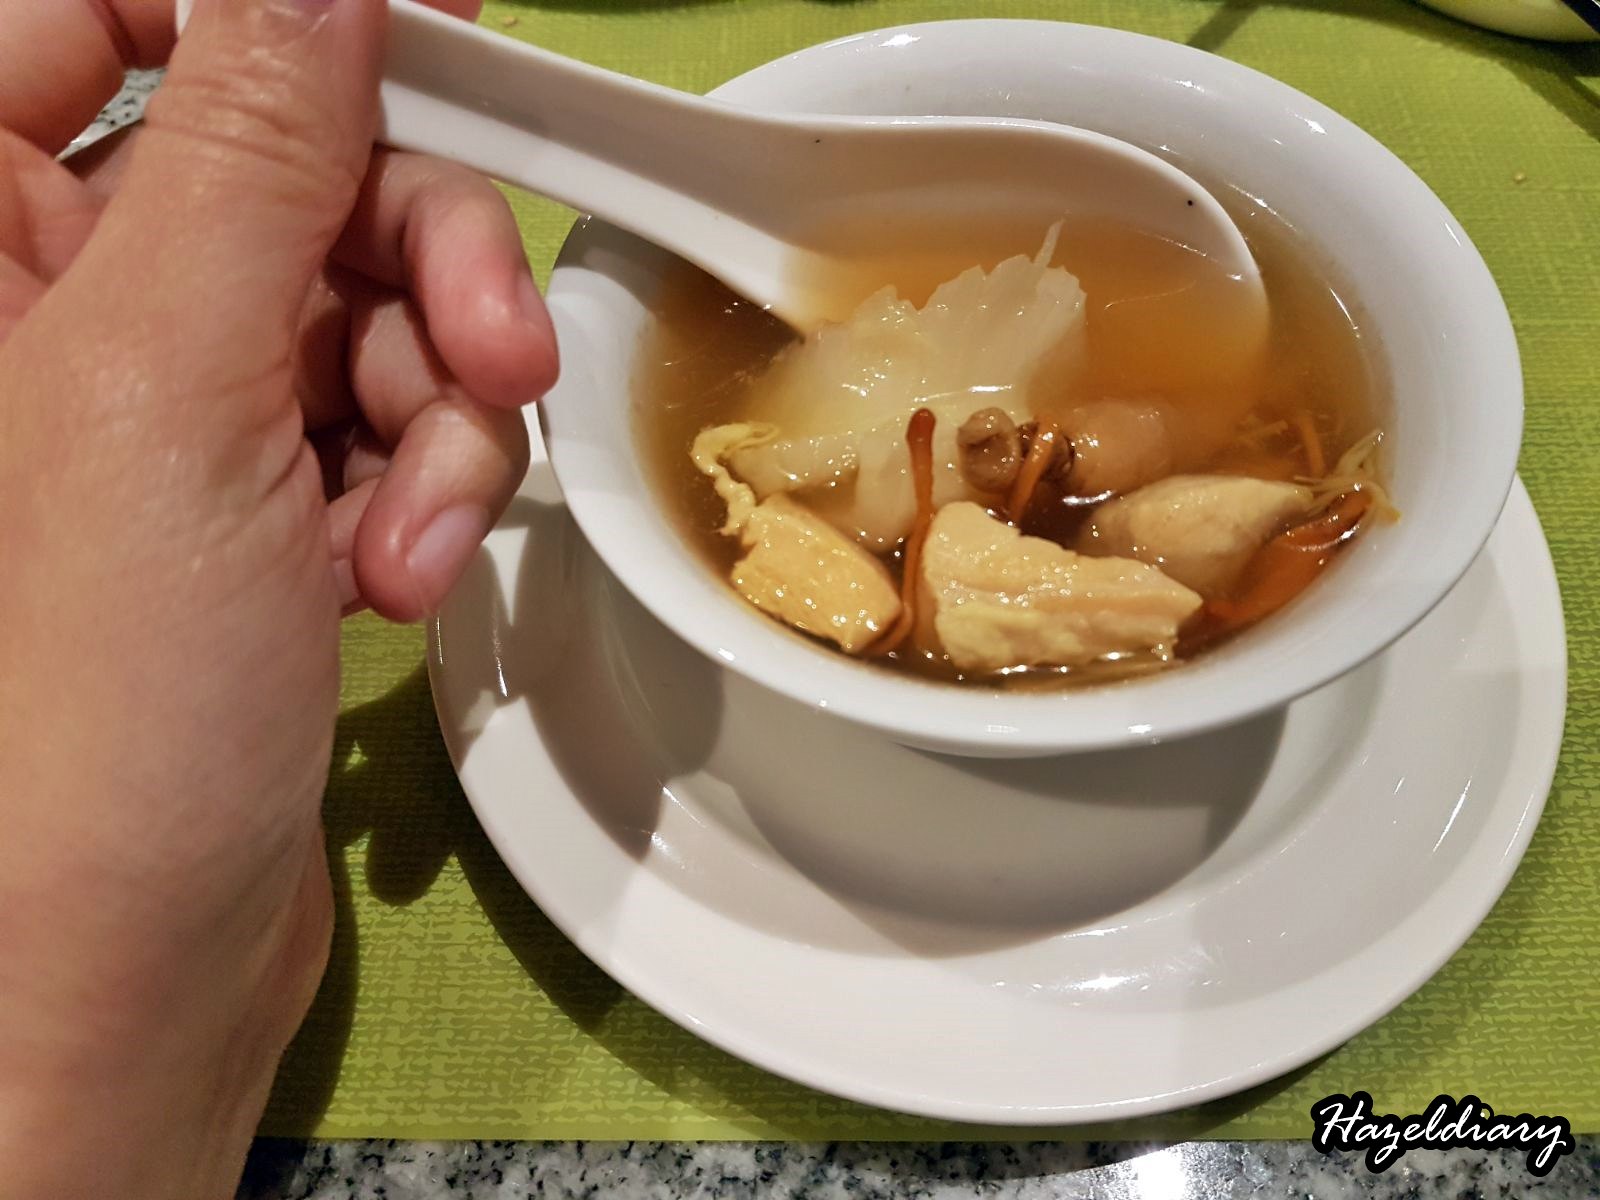 Ellenborough Market Cafe- Double-boiled soup